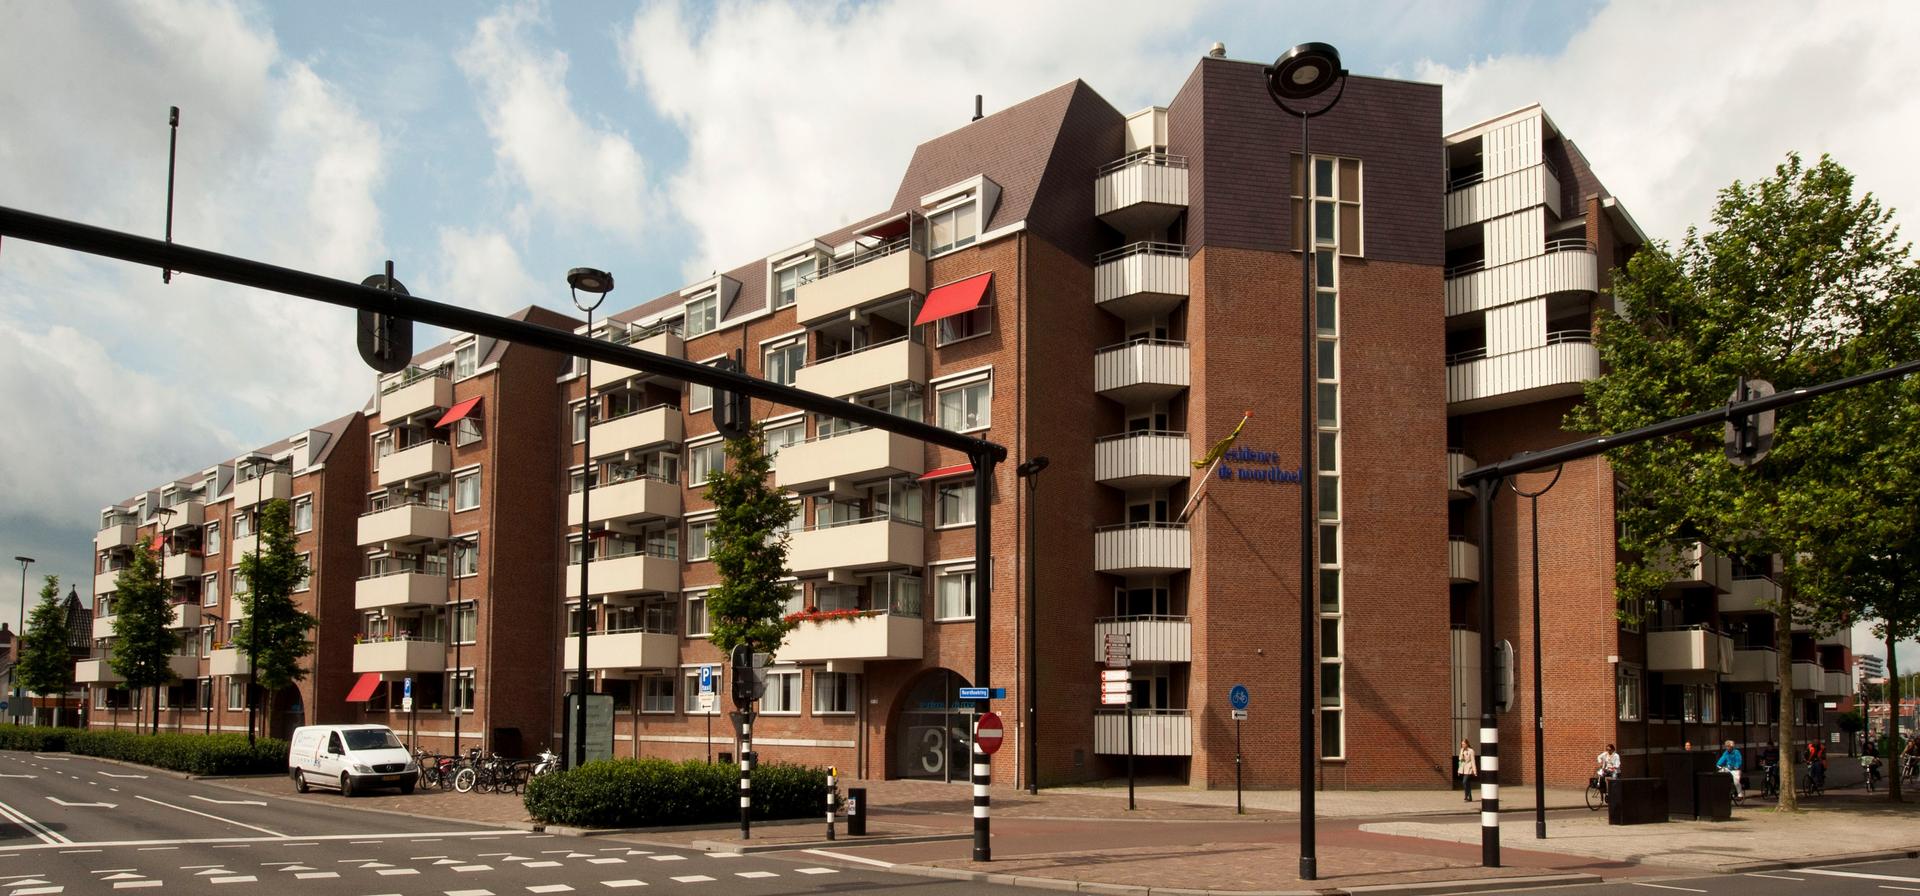 Residence De Noordhoek - Tilburg (2)